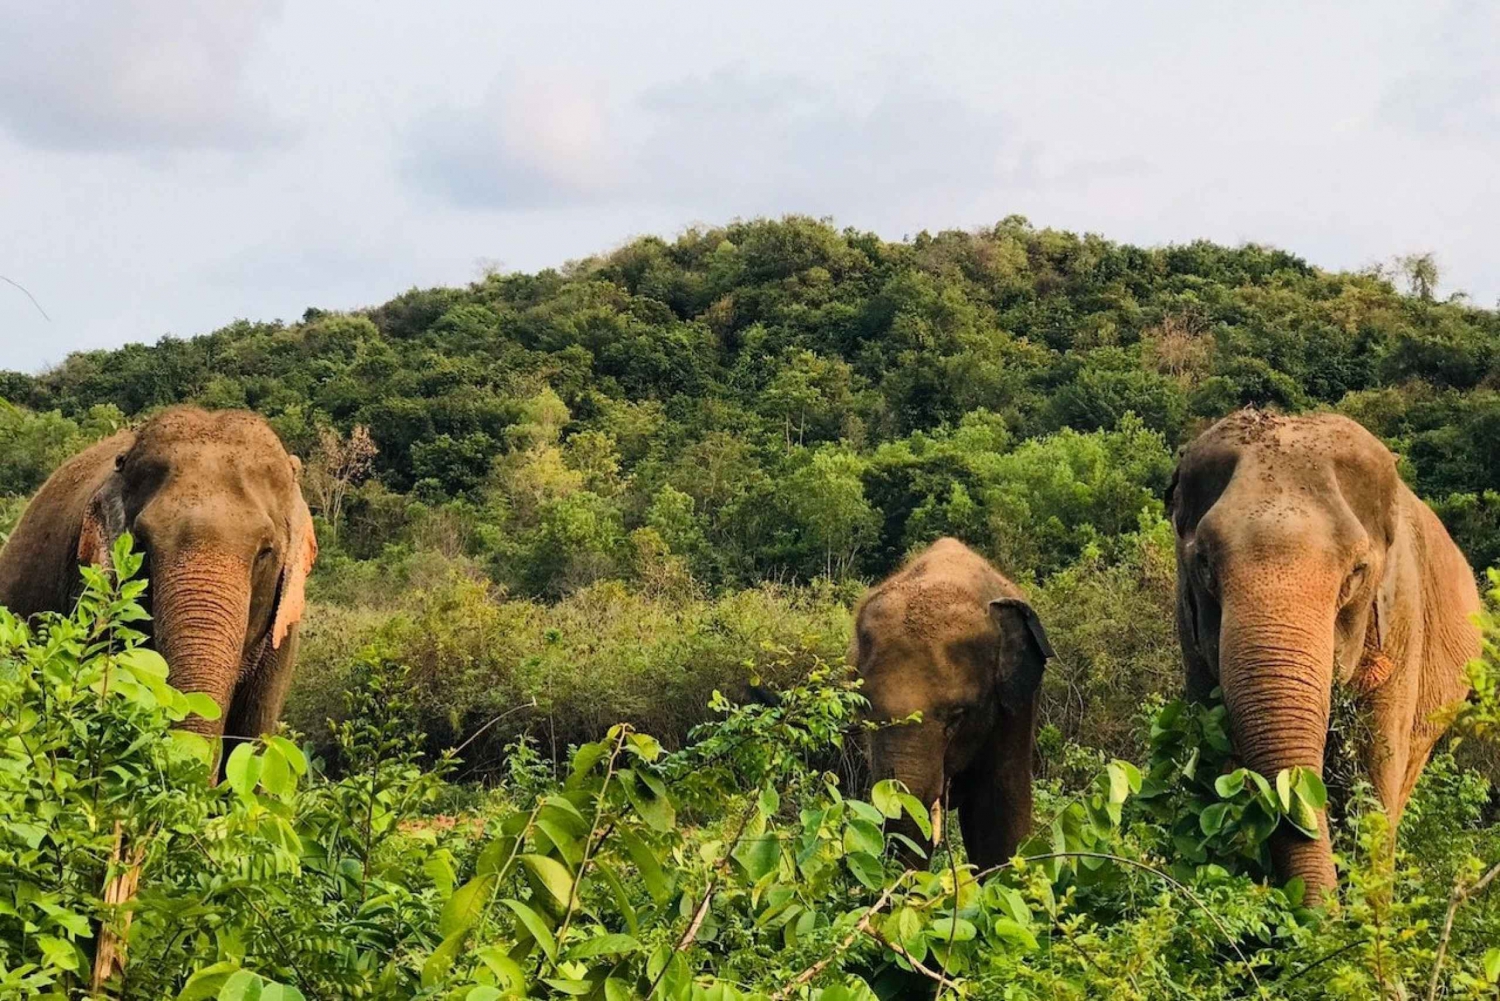 From Bangkok: Pattaya Ethical Elephant Sanctuary Interactive